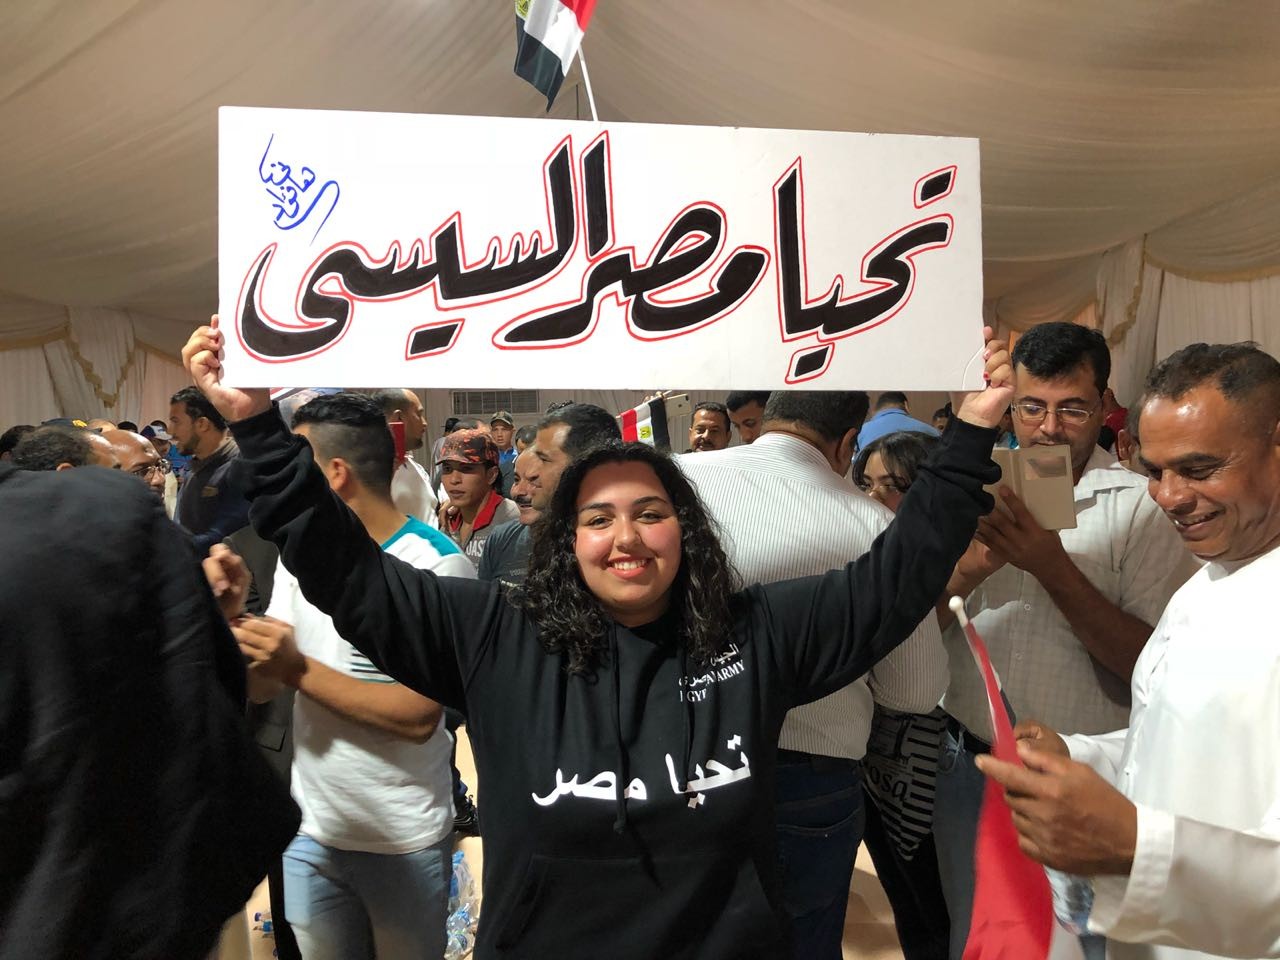  توافد المصريين في الإمارات للتصويت في الانتخابات الرئاسية